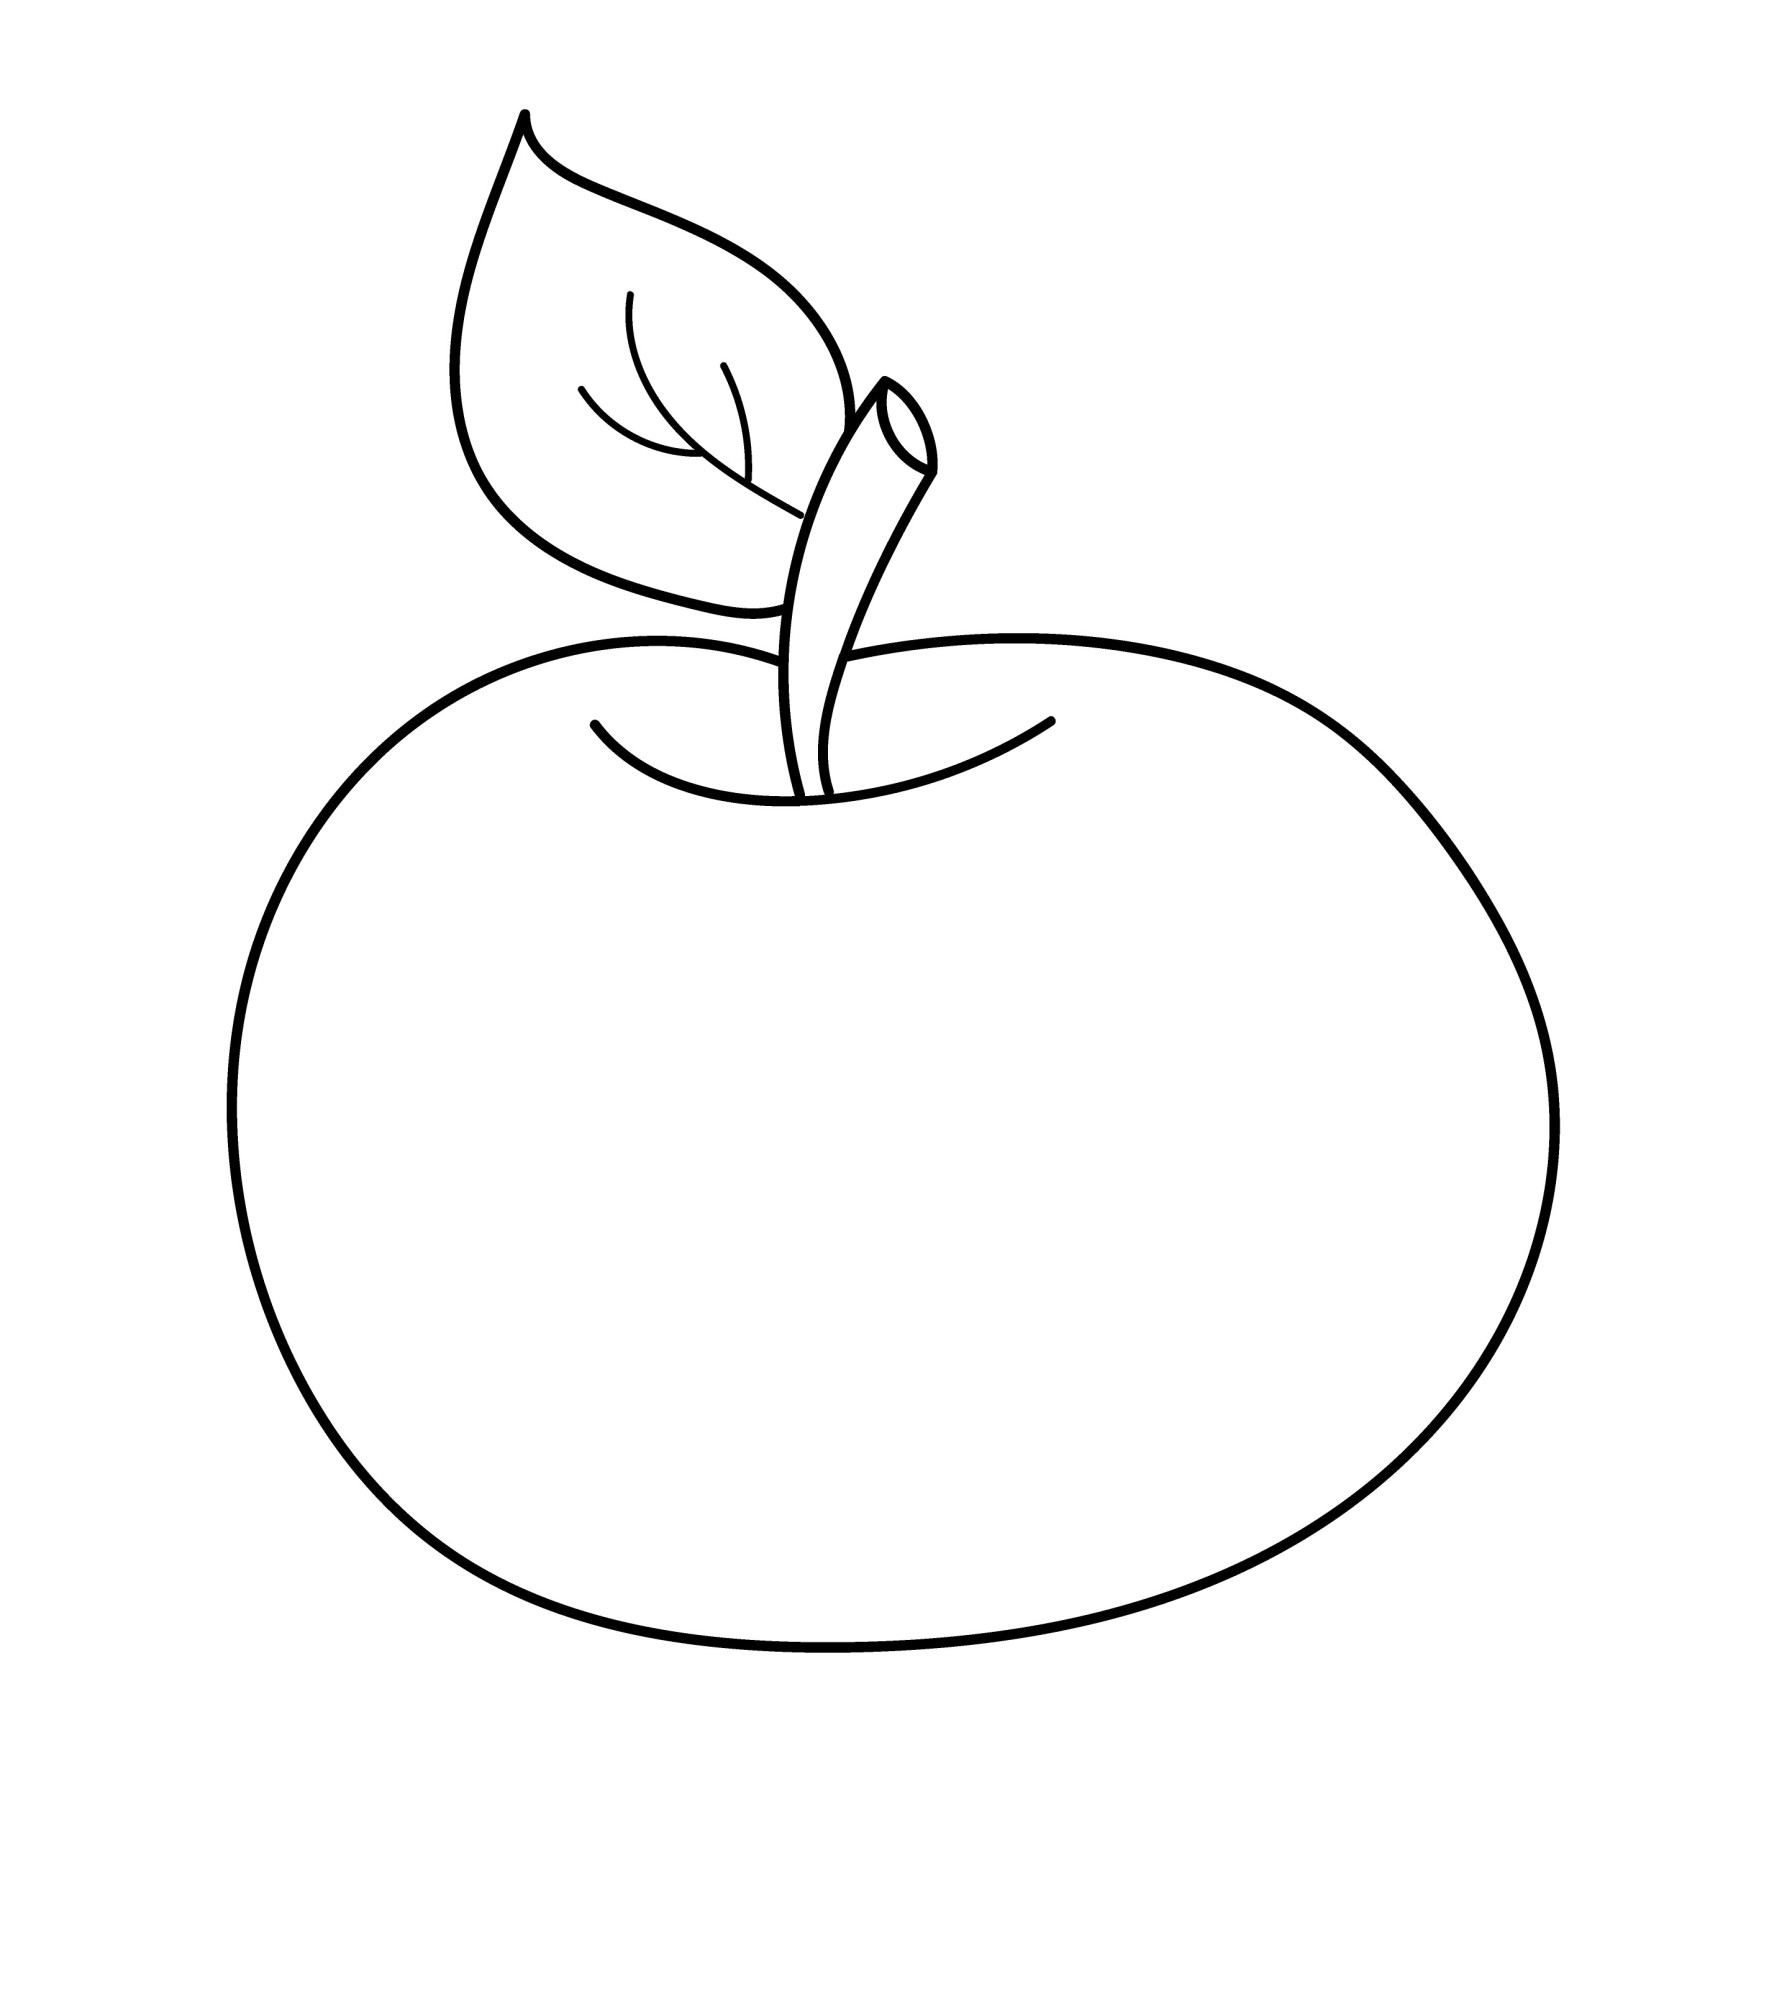 Раскраска для детей: кислое яблоко